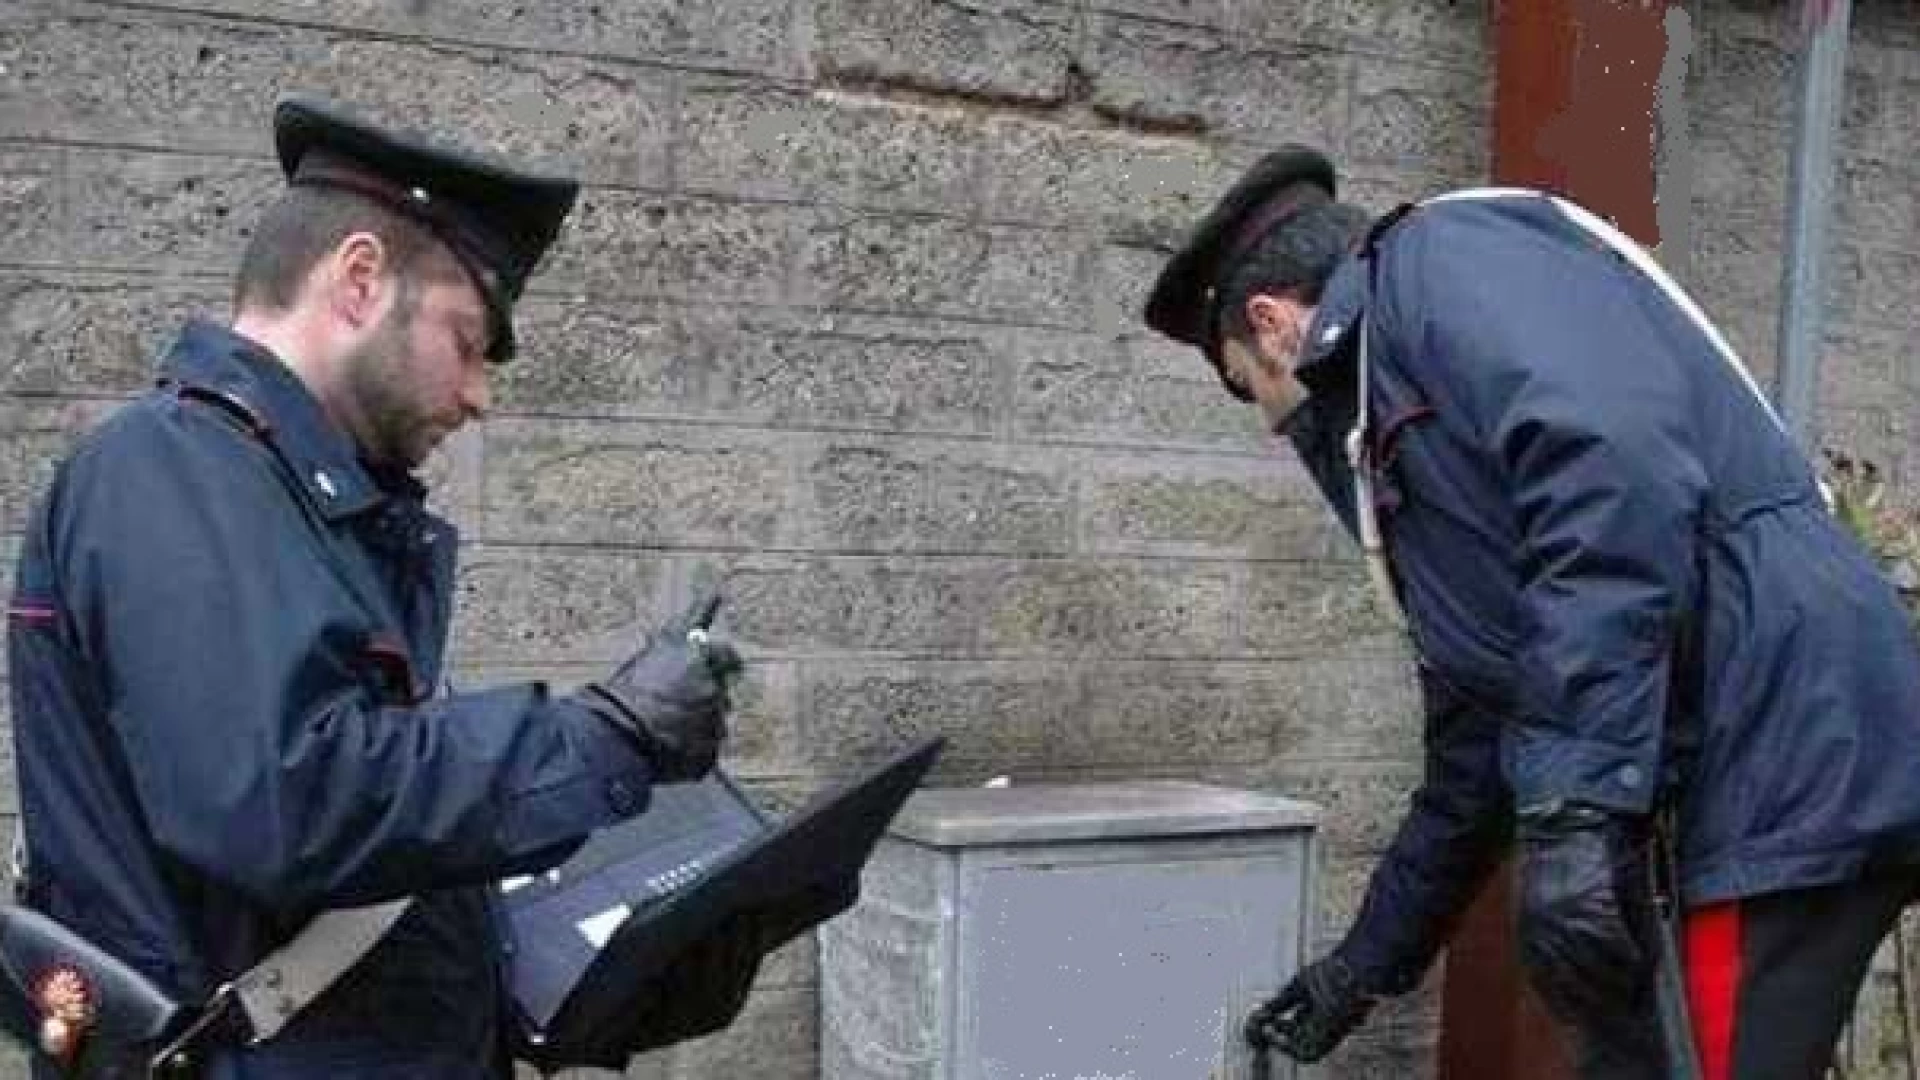 Venafro: Furto di gas metano: i Carabinieri denunciano una persona.